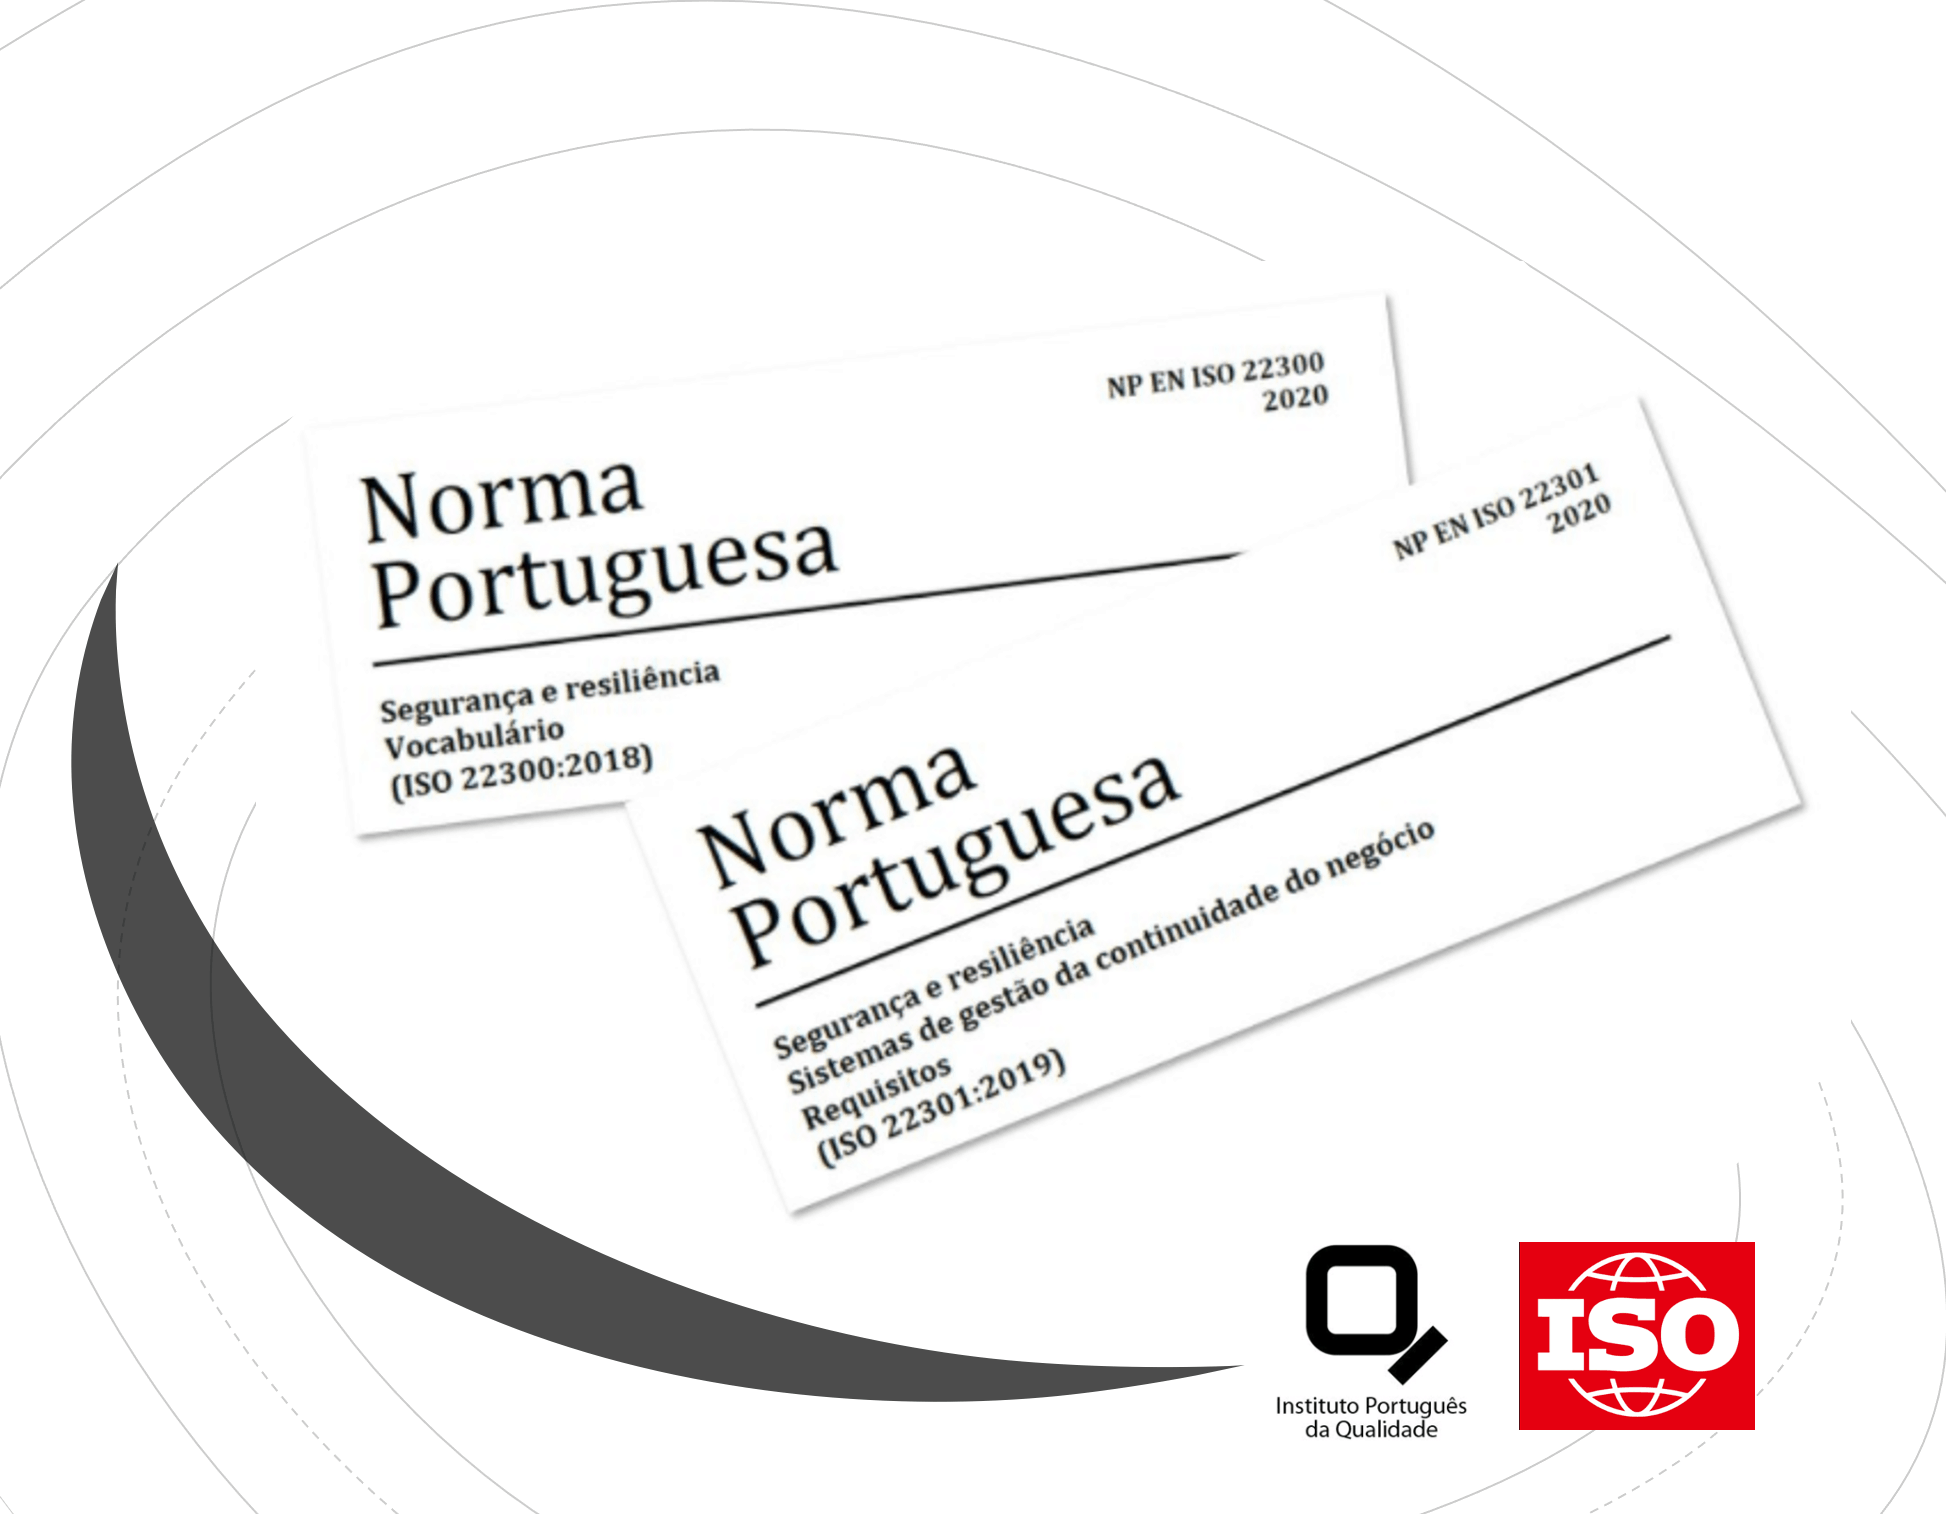 Publicadas normas ISO em português